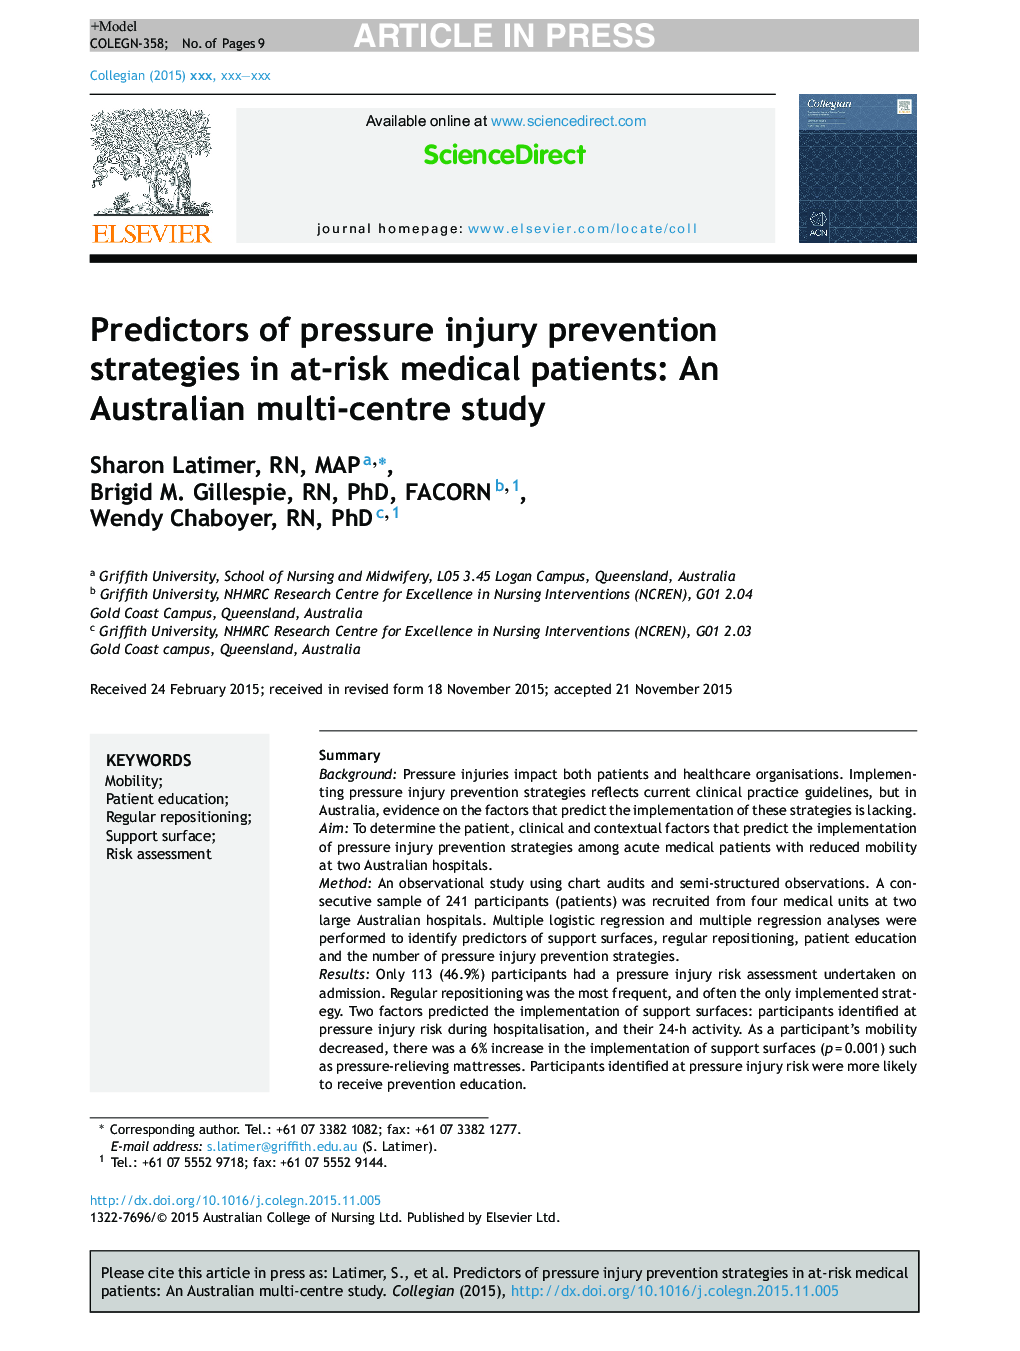 پیش بینی راهبرد پیشگیری از آسیب های فشار در بیماران تحت درمان با خطر: یک مطالعه چند مرکزی در استرالیا 